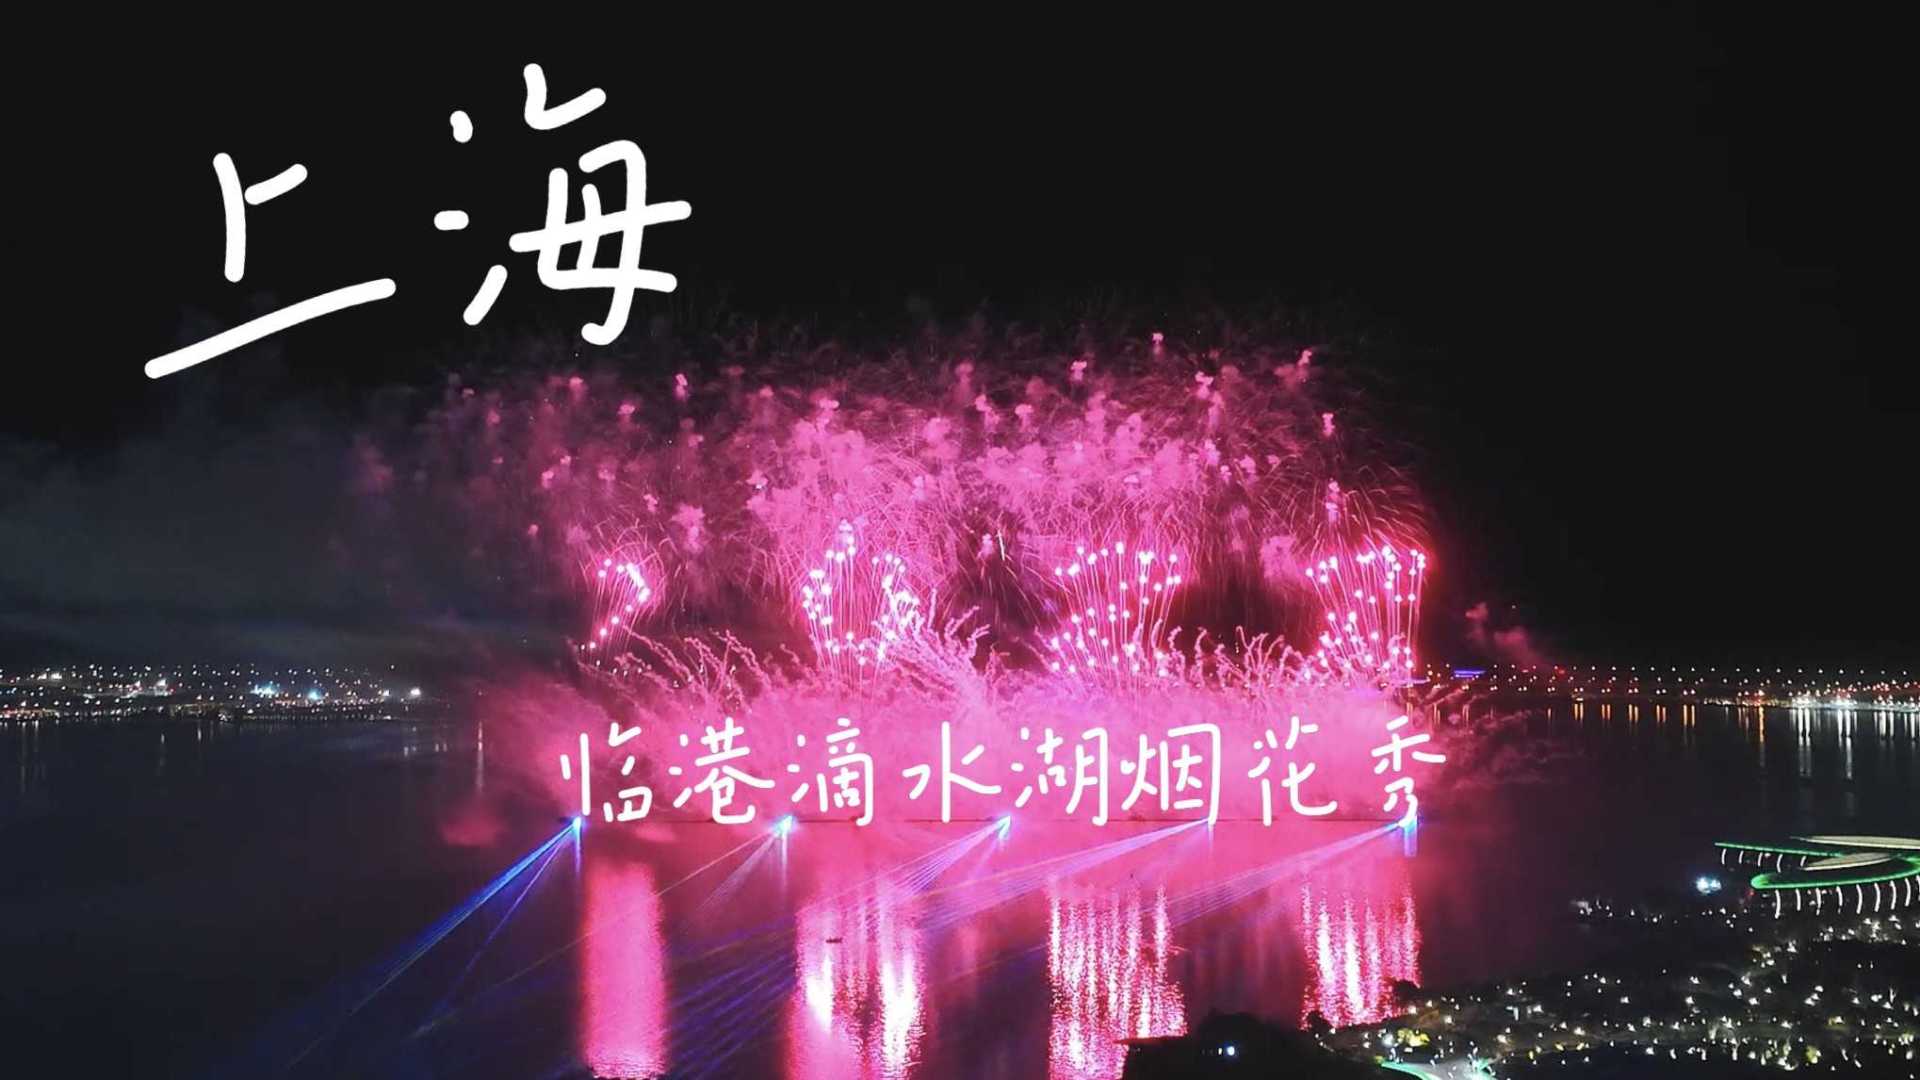 别再追迪士尼的烟花了，一年一次的上海滴水湖的烟花秀才是YYDS「4K大疆御3」